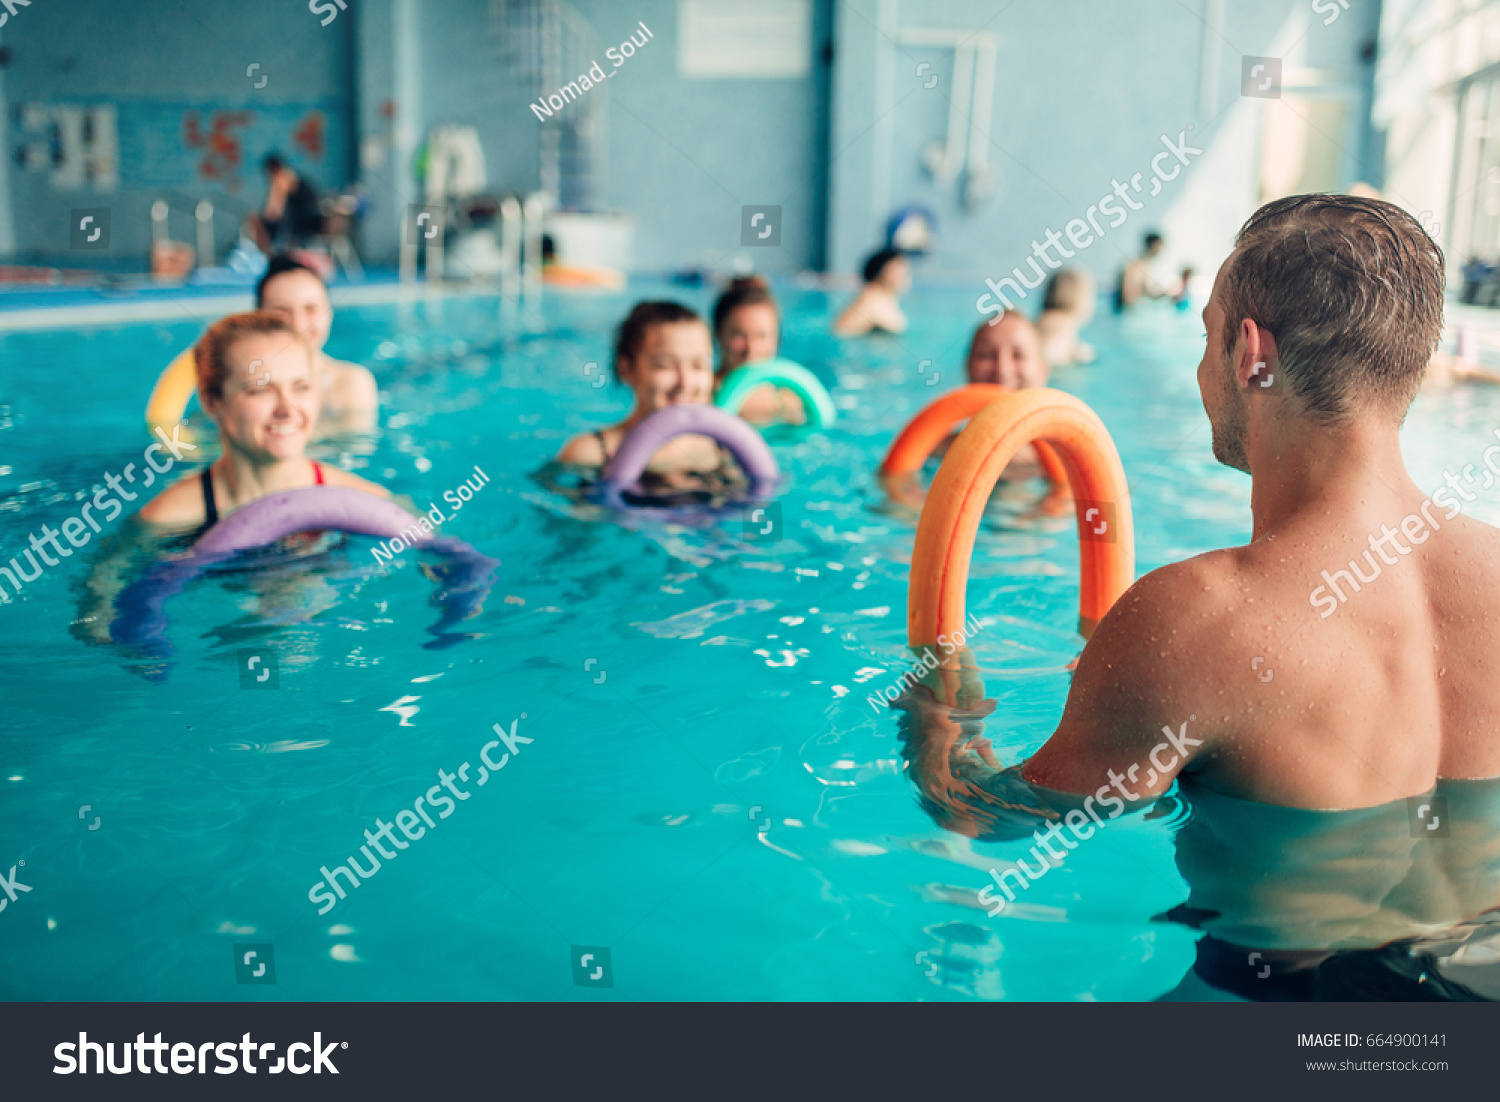 Aqua aerobics, women class with male trainer #664900141